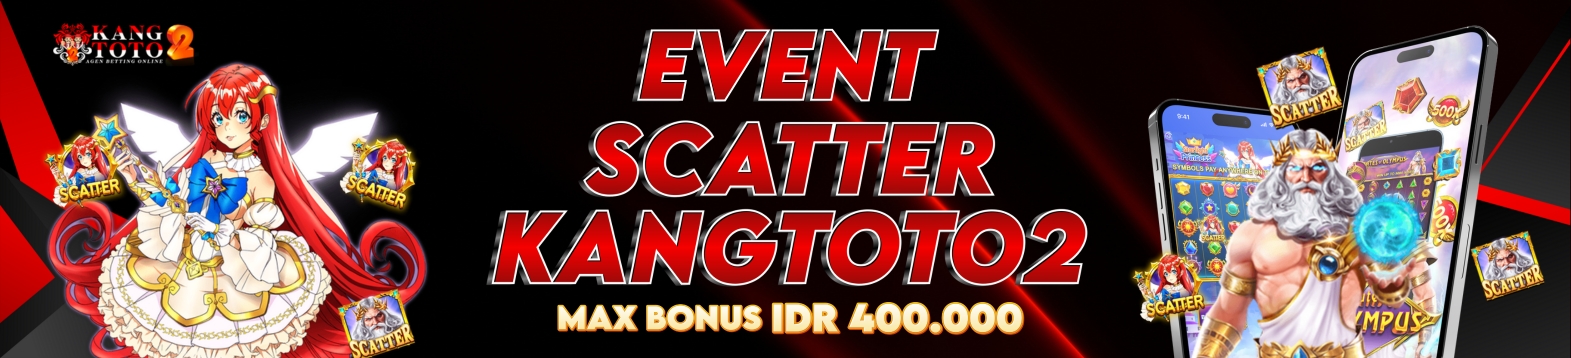 bonus scatter kangtoto2